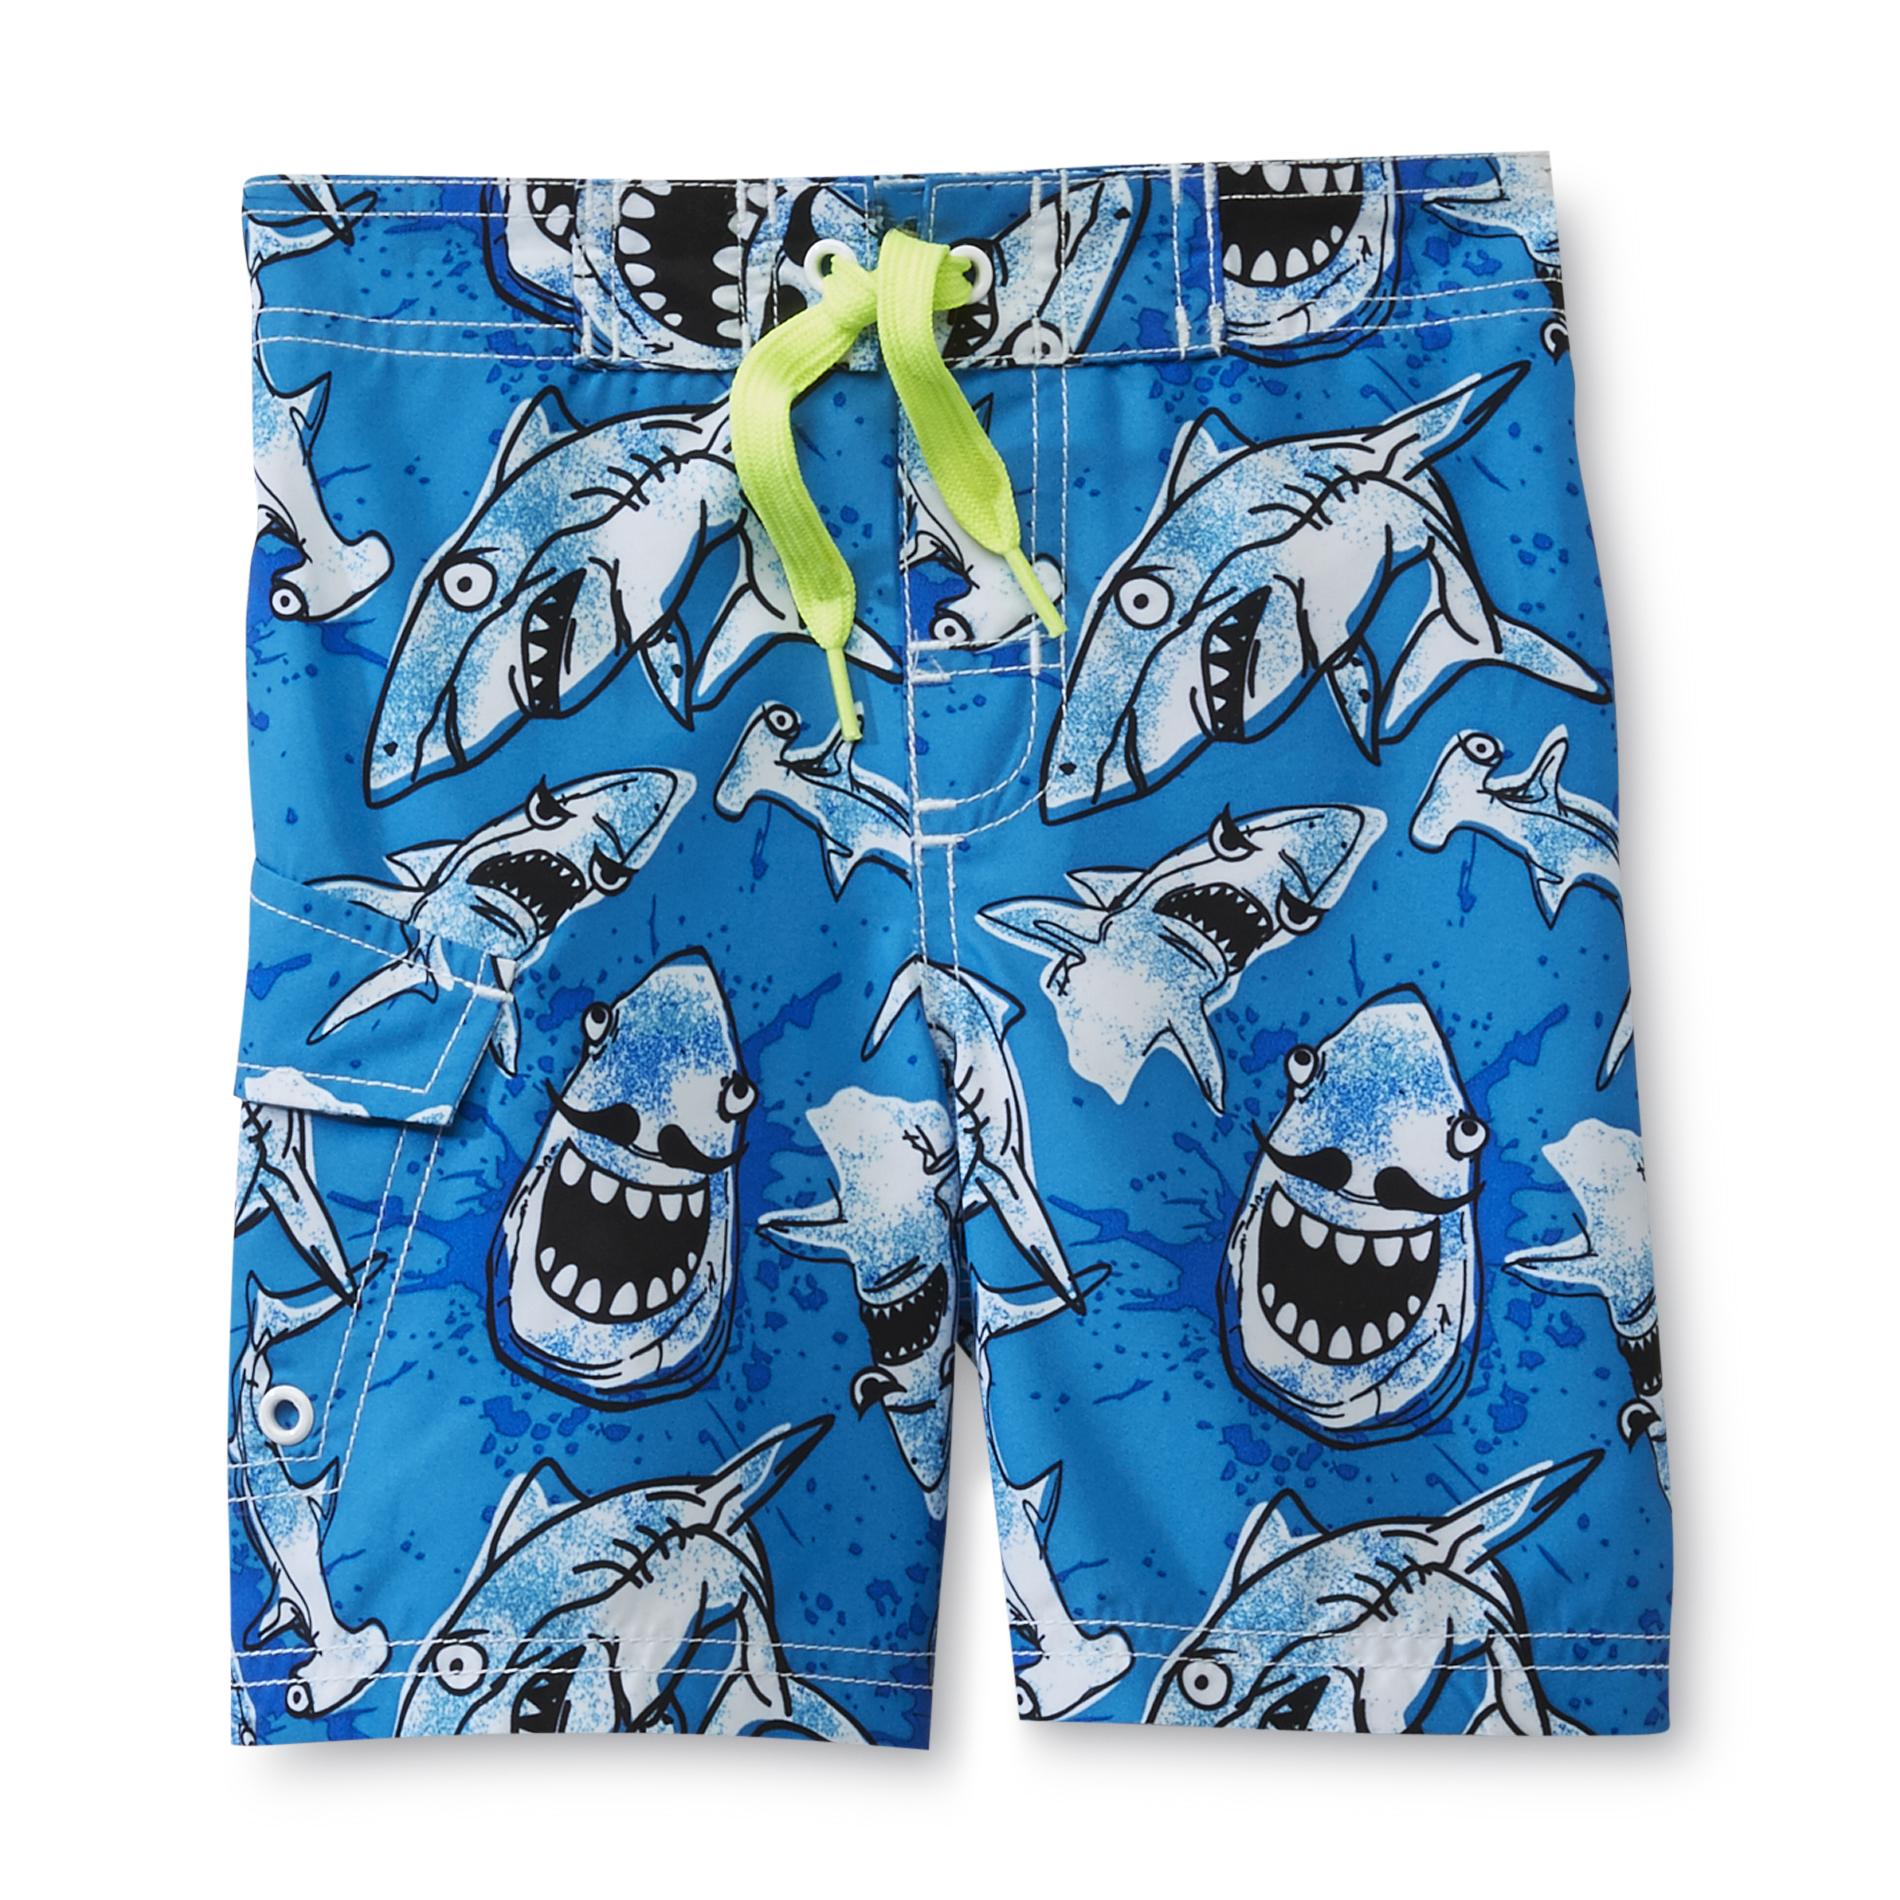 Joe Boxer Infant & Toddler Boy's Swim Trunks - Shark Print